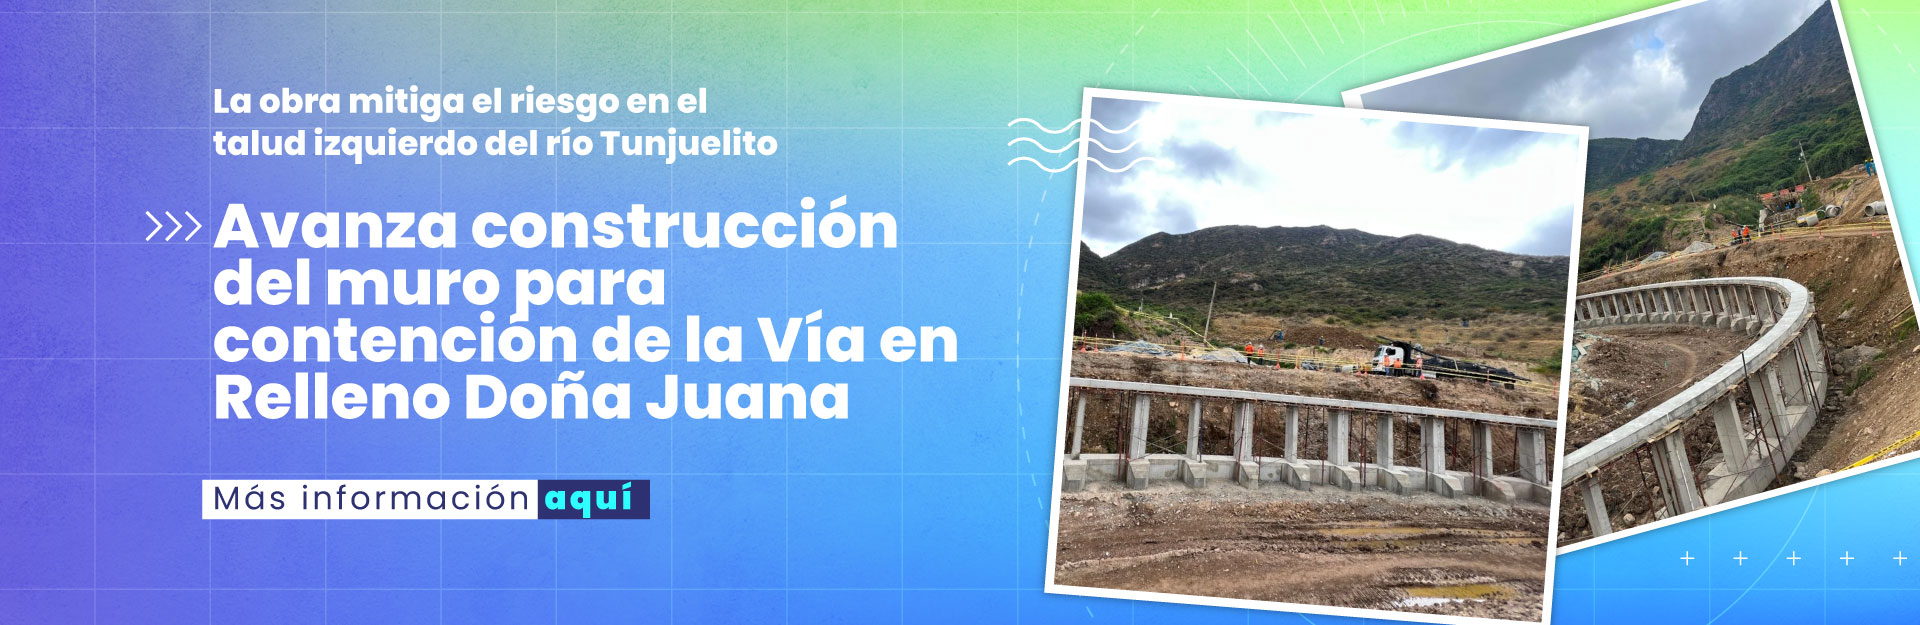 EAAB construye muro para contención de la Vía en Relleno Doña Juana